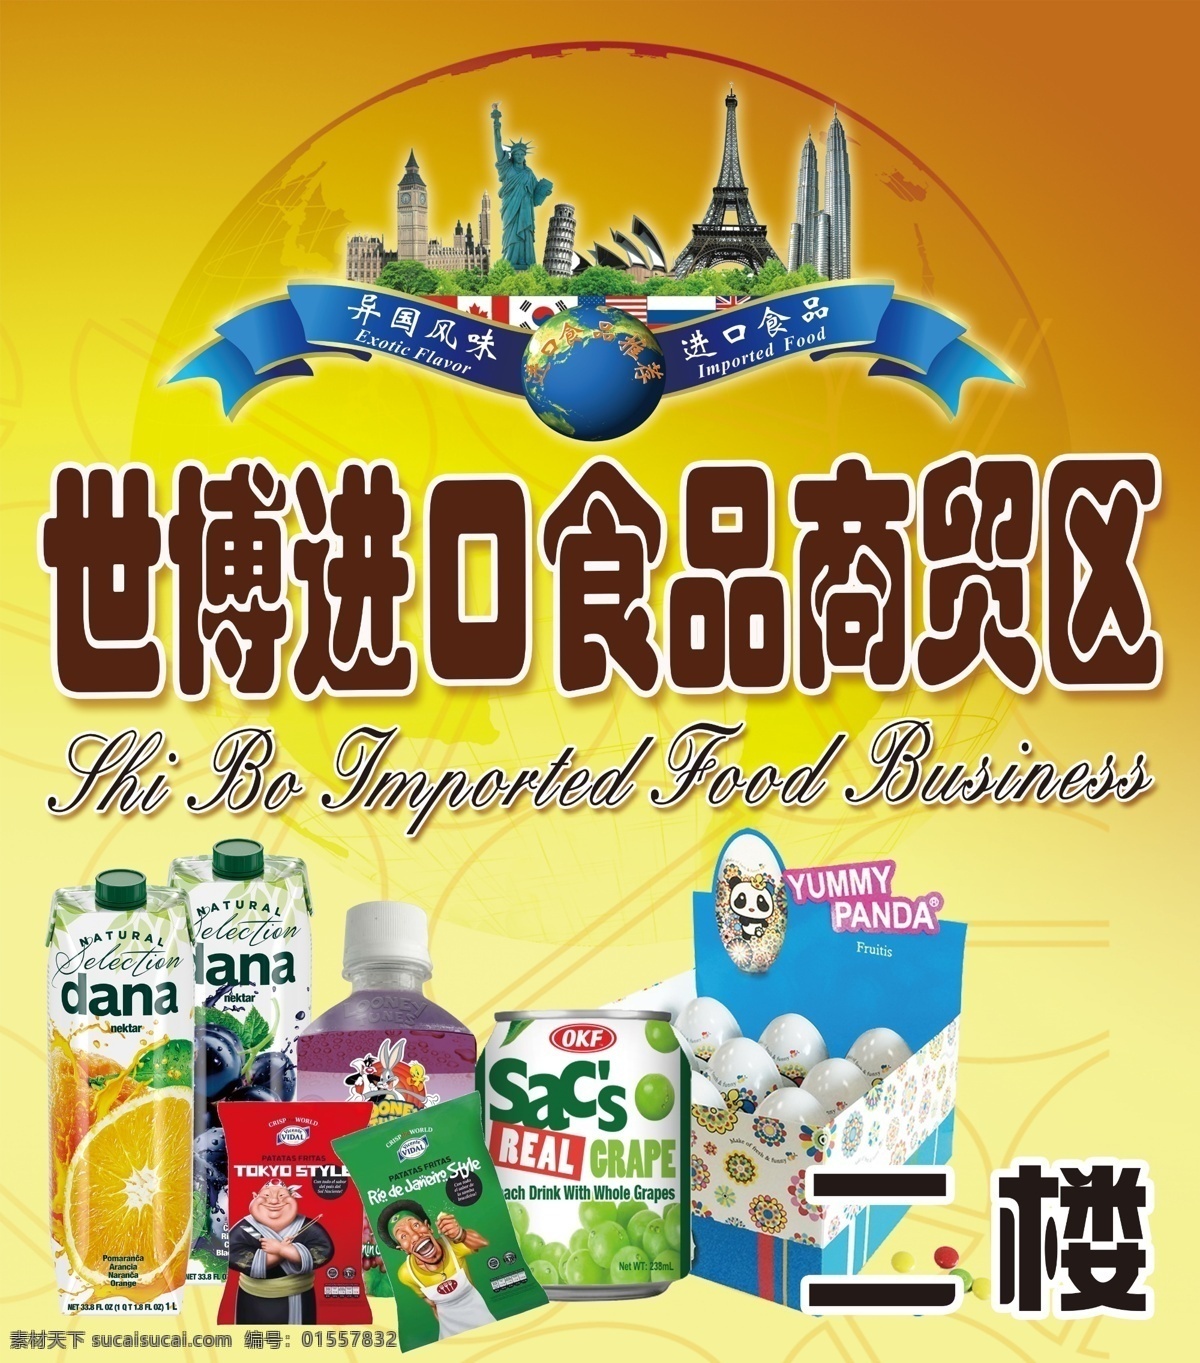 进口食品 进口 食品 进口食品海报 进口海报 食品海报 食品宣传 进口食品宣传